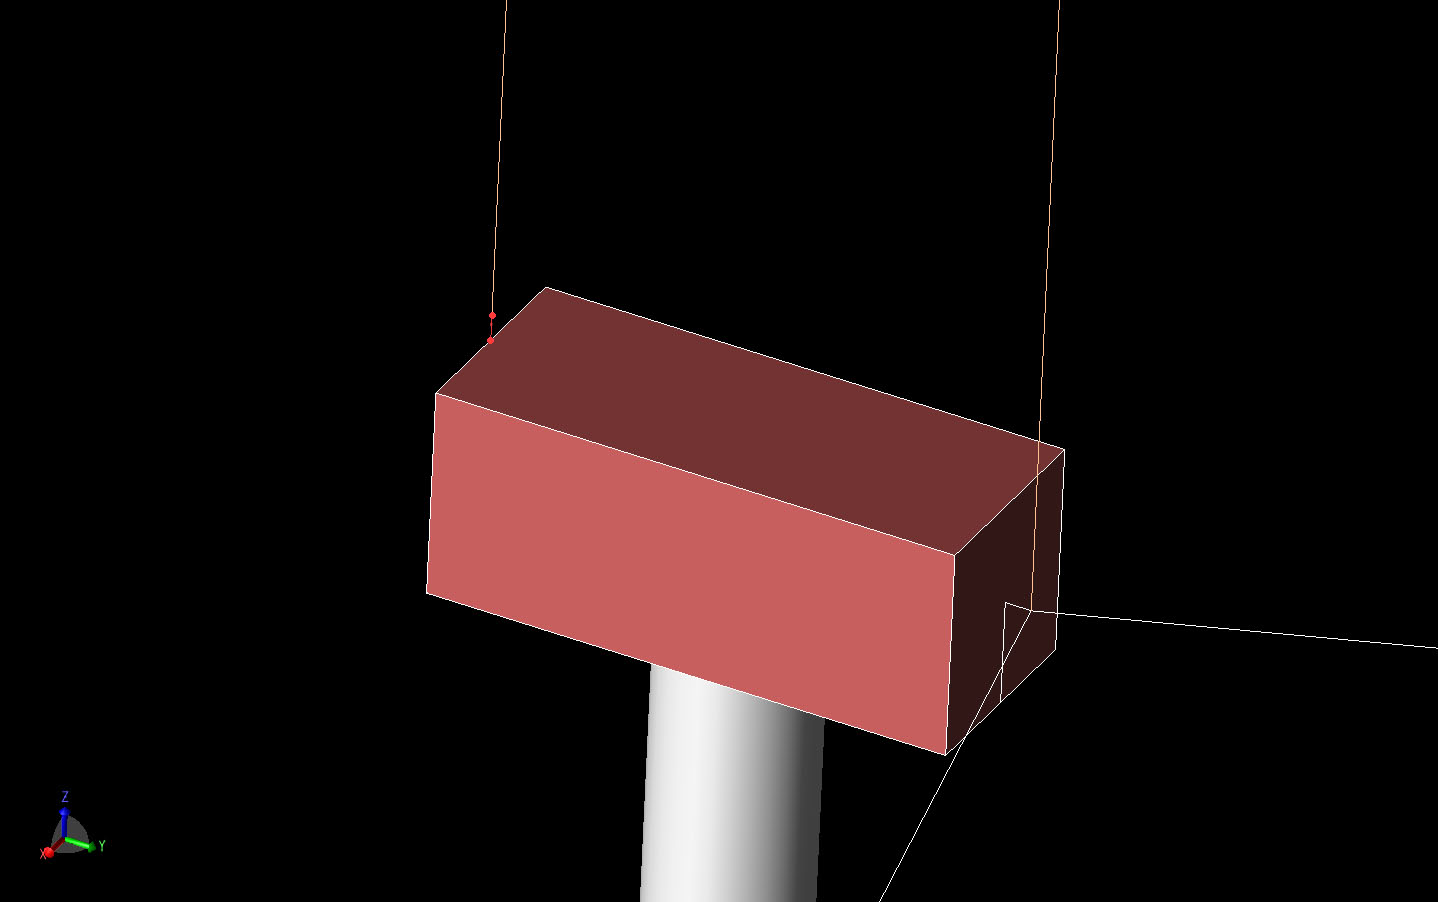 図2ナセル後部に落雷した場合の電流源位置を明るい赤で示す。